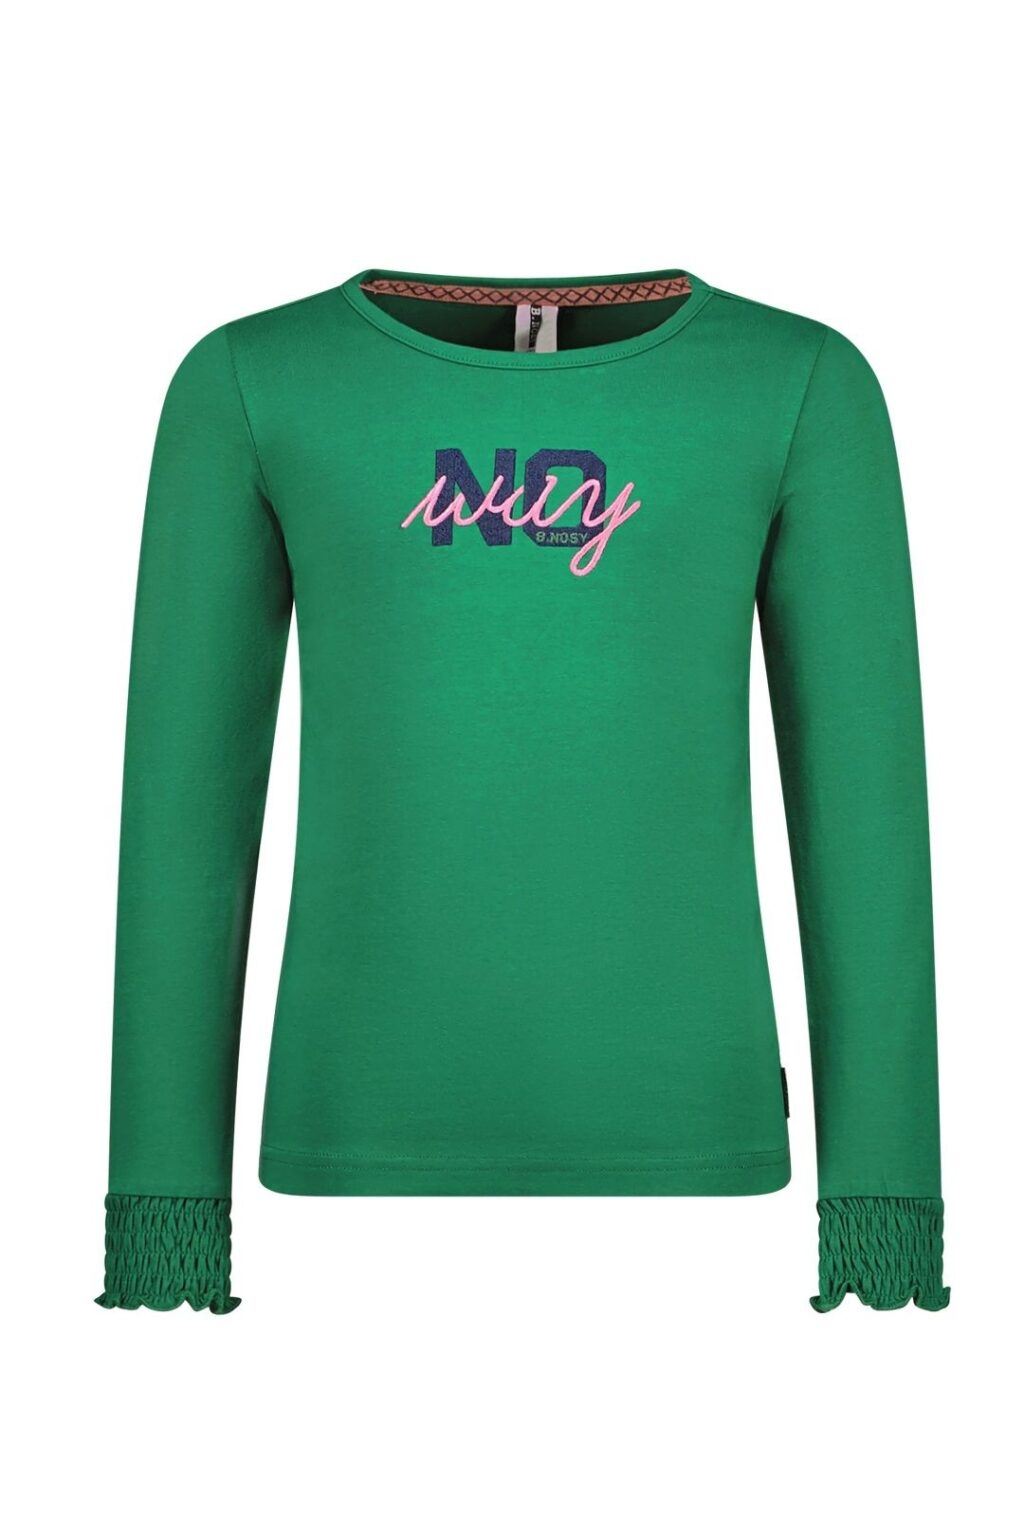 B.Nosy Meisjes shirt - Elaine - Emerald groen ~ Spinze.nl